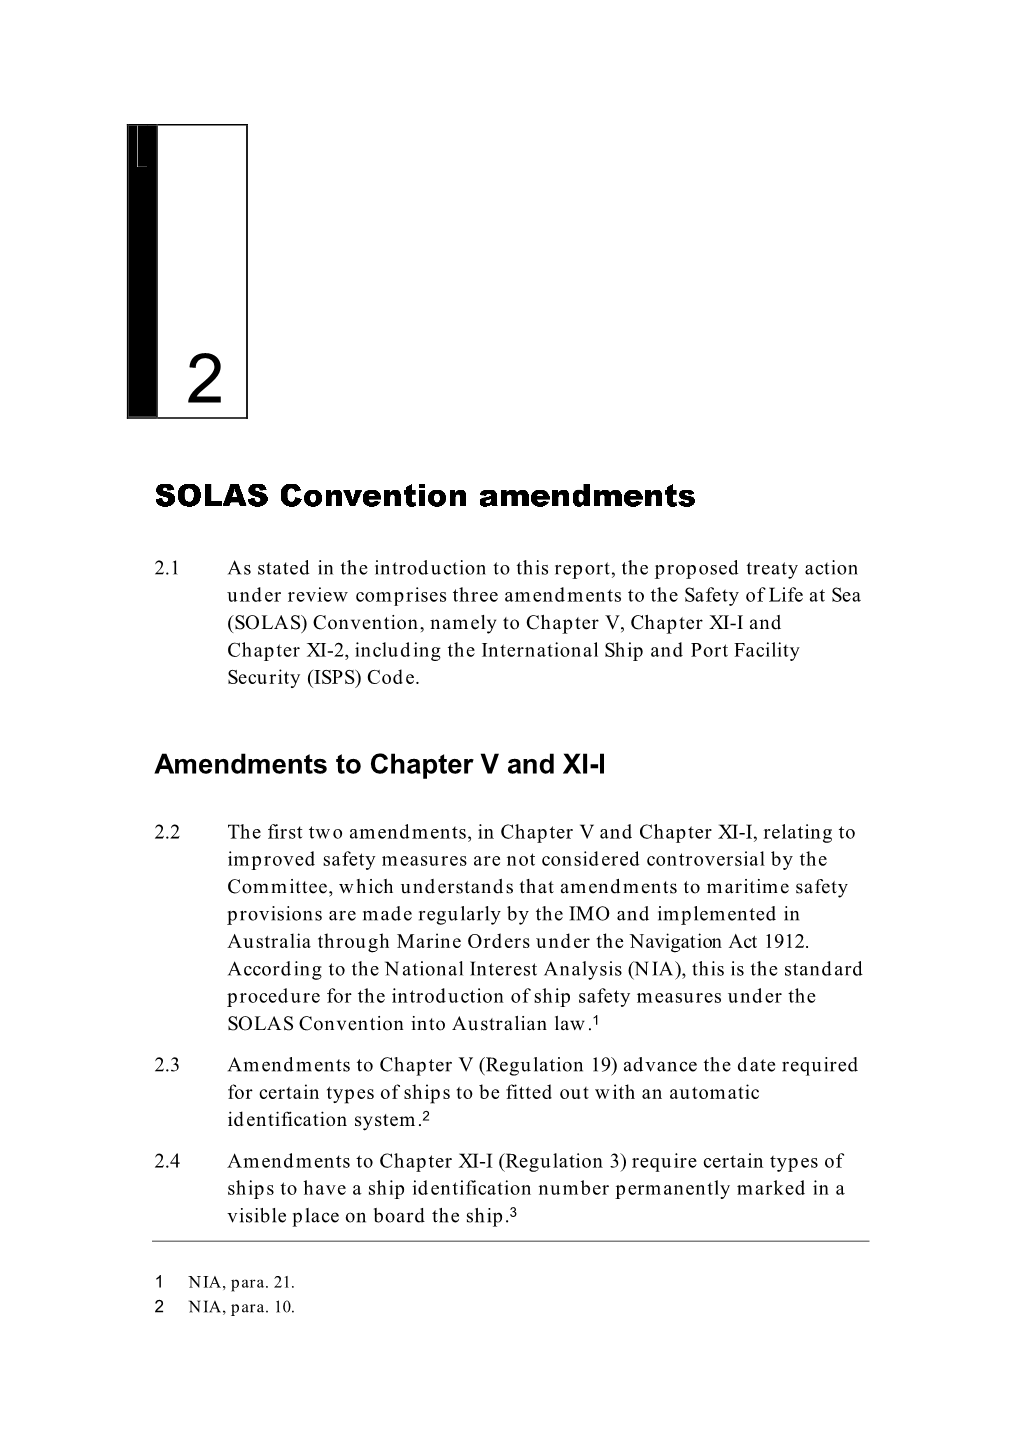 SOLAS Convention Amendments